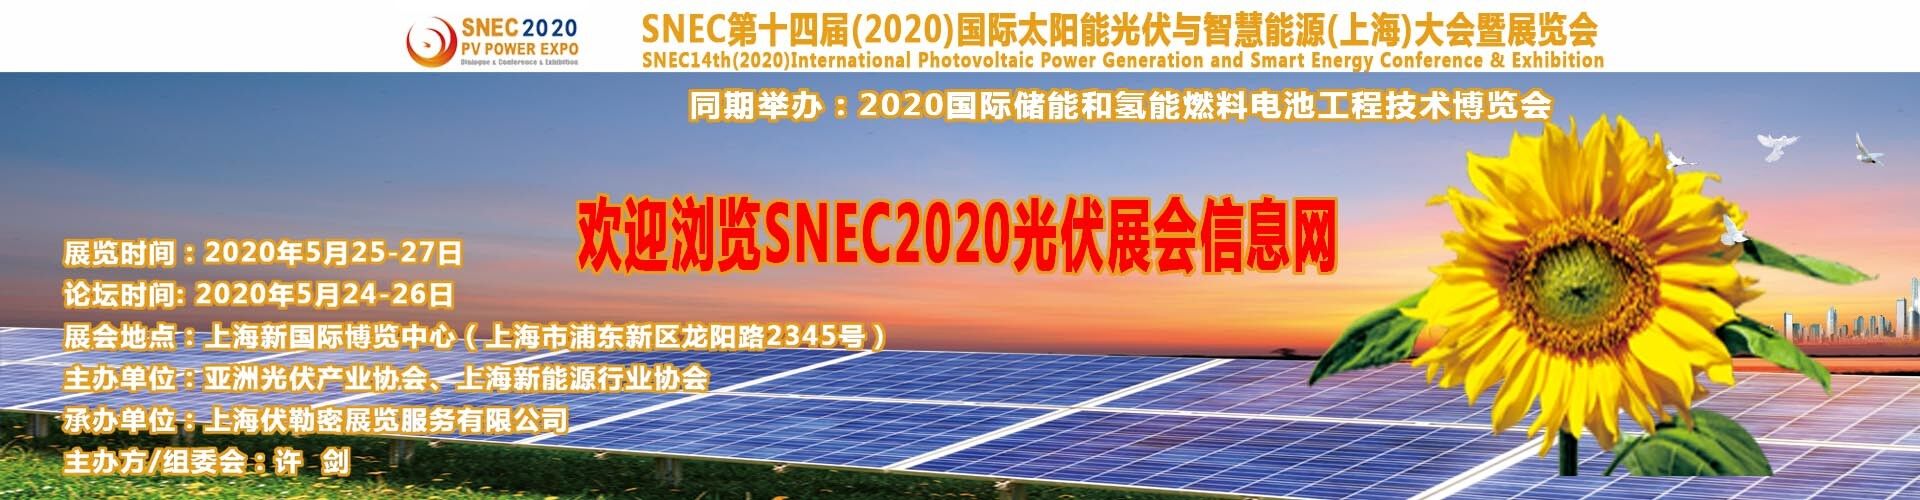 中國2018上海5月份SNEC展會